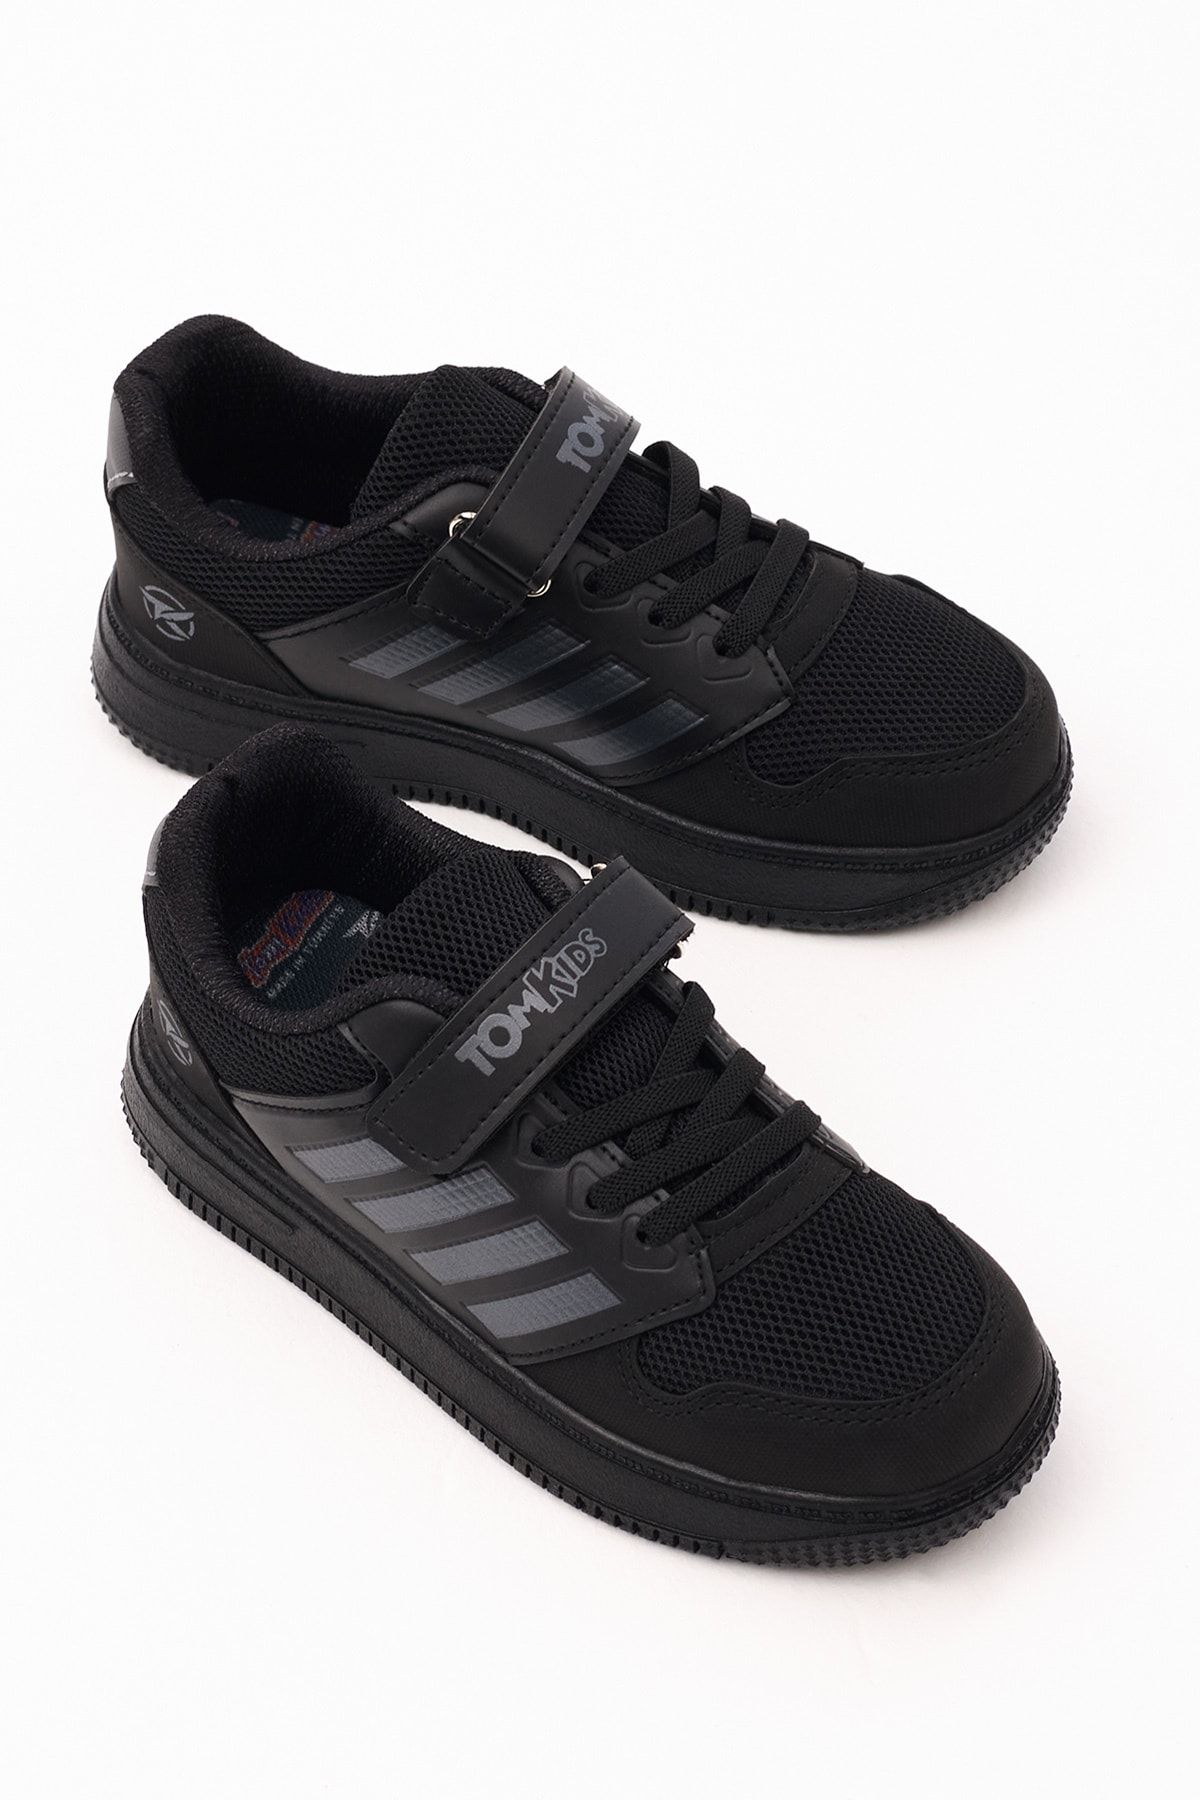 Tonny Black Çocuk Unisex Siyah Füme Rahat Kalıp Yanı Şerit Detaylı Bağcıklı Ve Cırtlıı Spor Ayakkabı